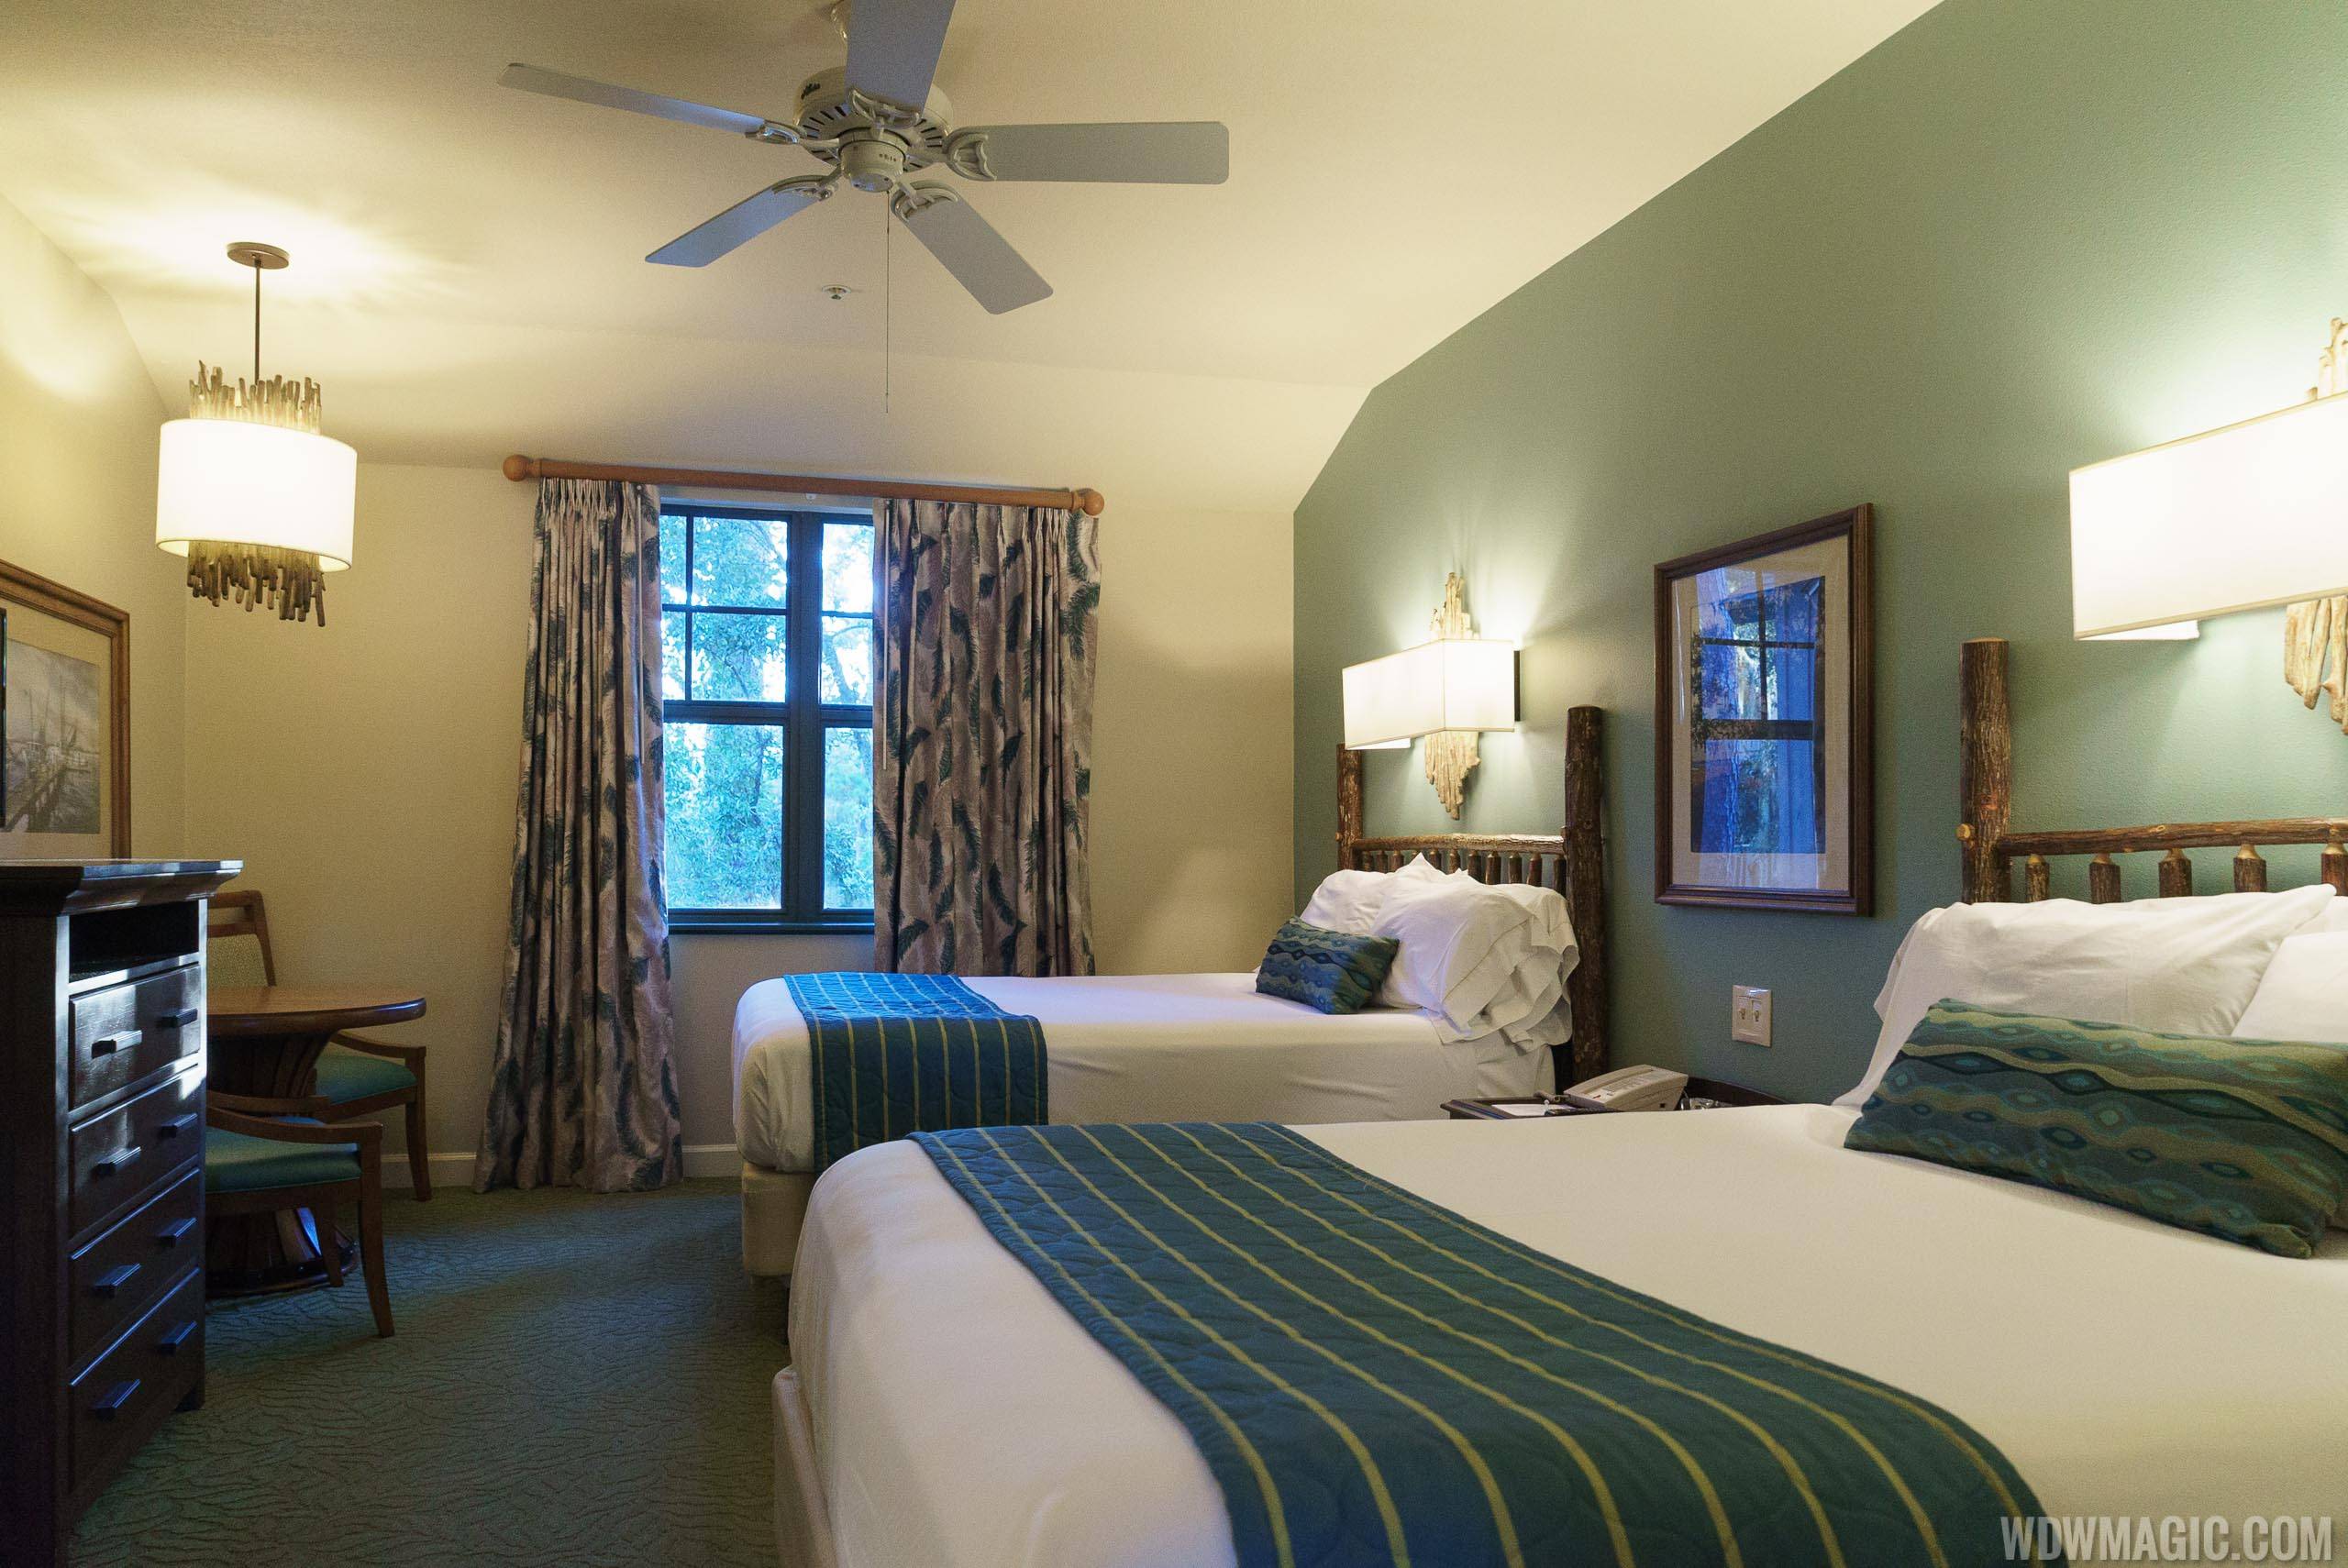 Disney's Hilton Head Island Resort - 2 Bedroom Suite Second Bedroom